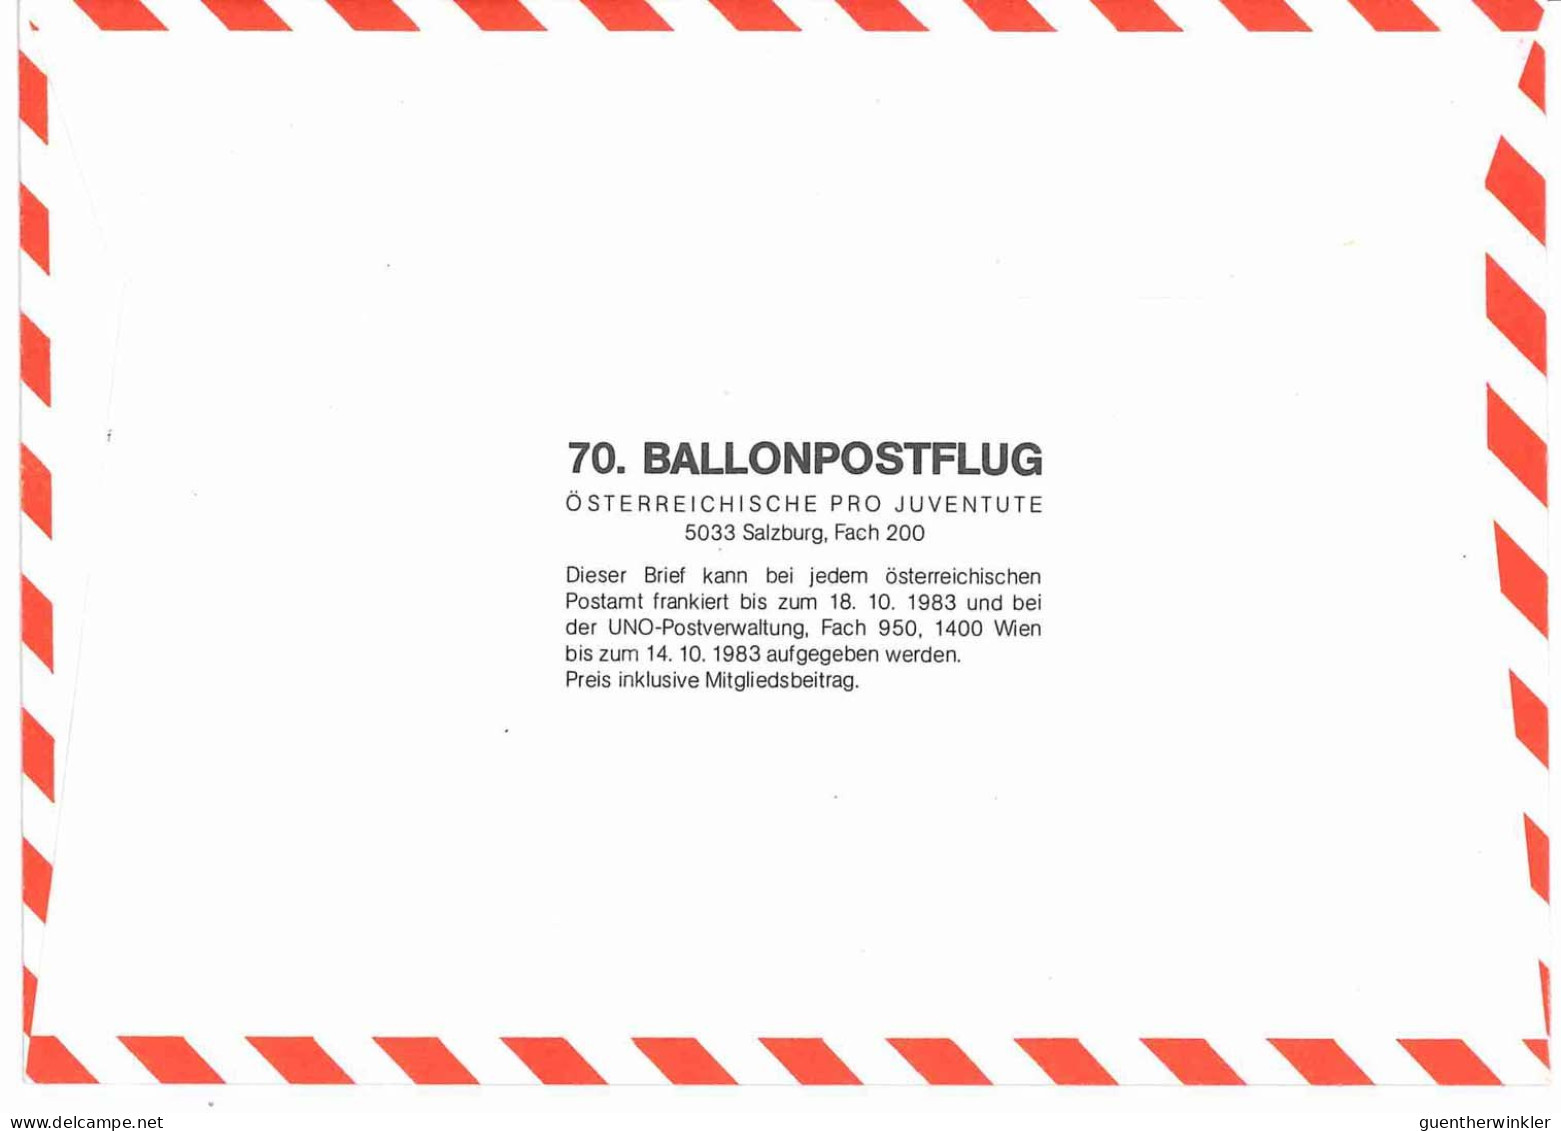 Regulärer Ballonpostflug Nr. 70a Der Pro Juventute [RBP70a] - Ballonpost